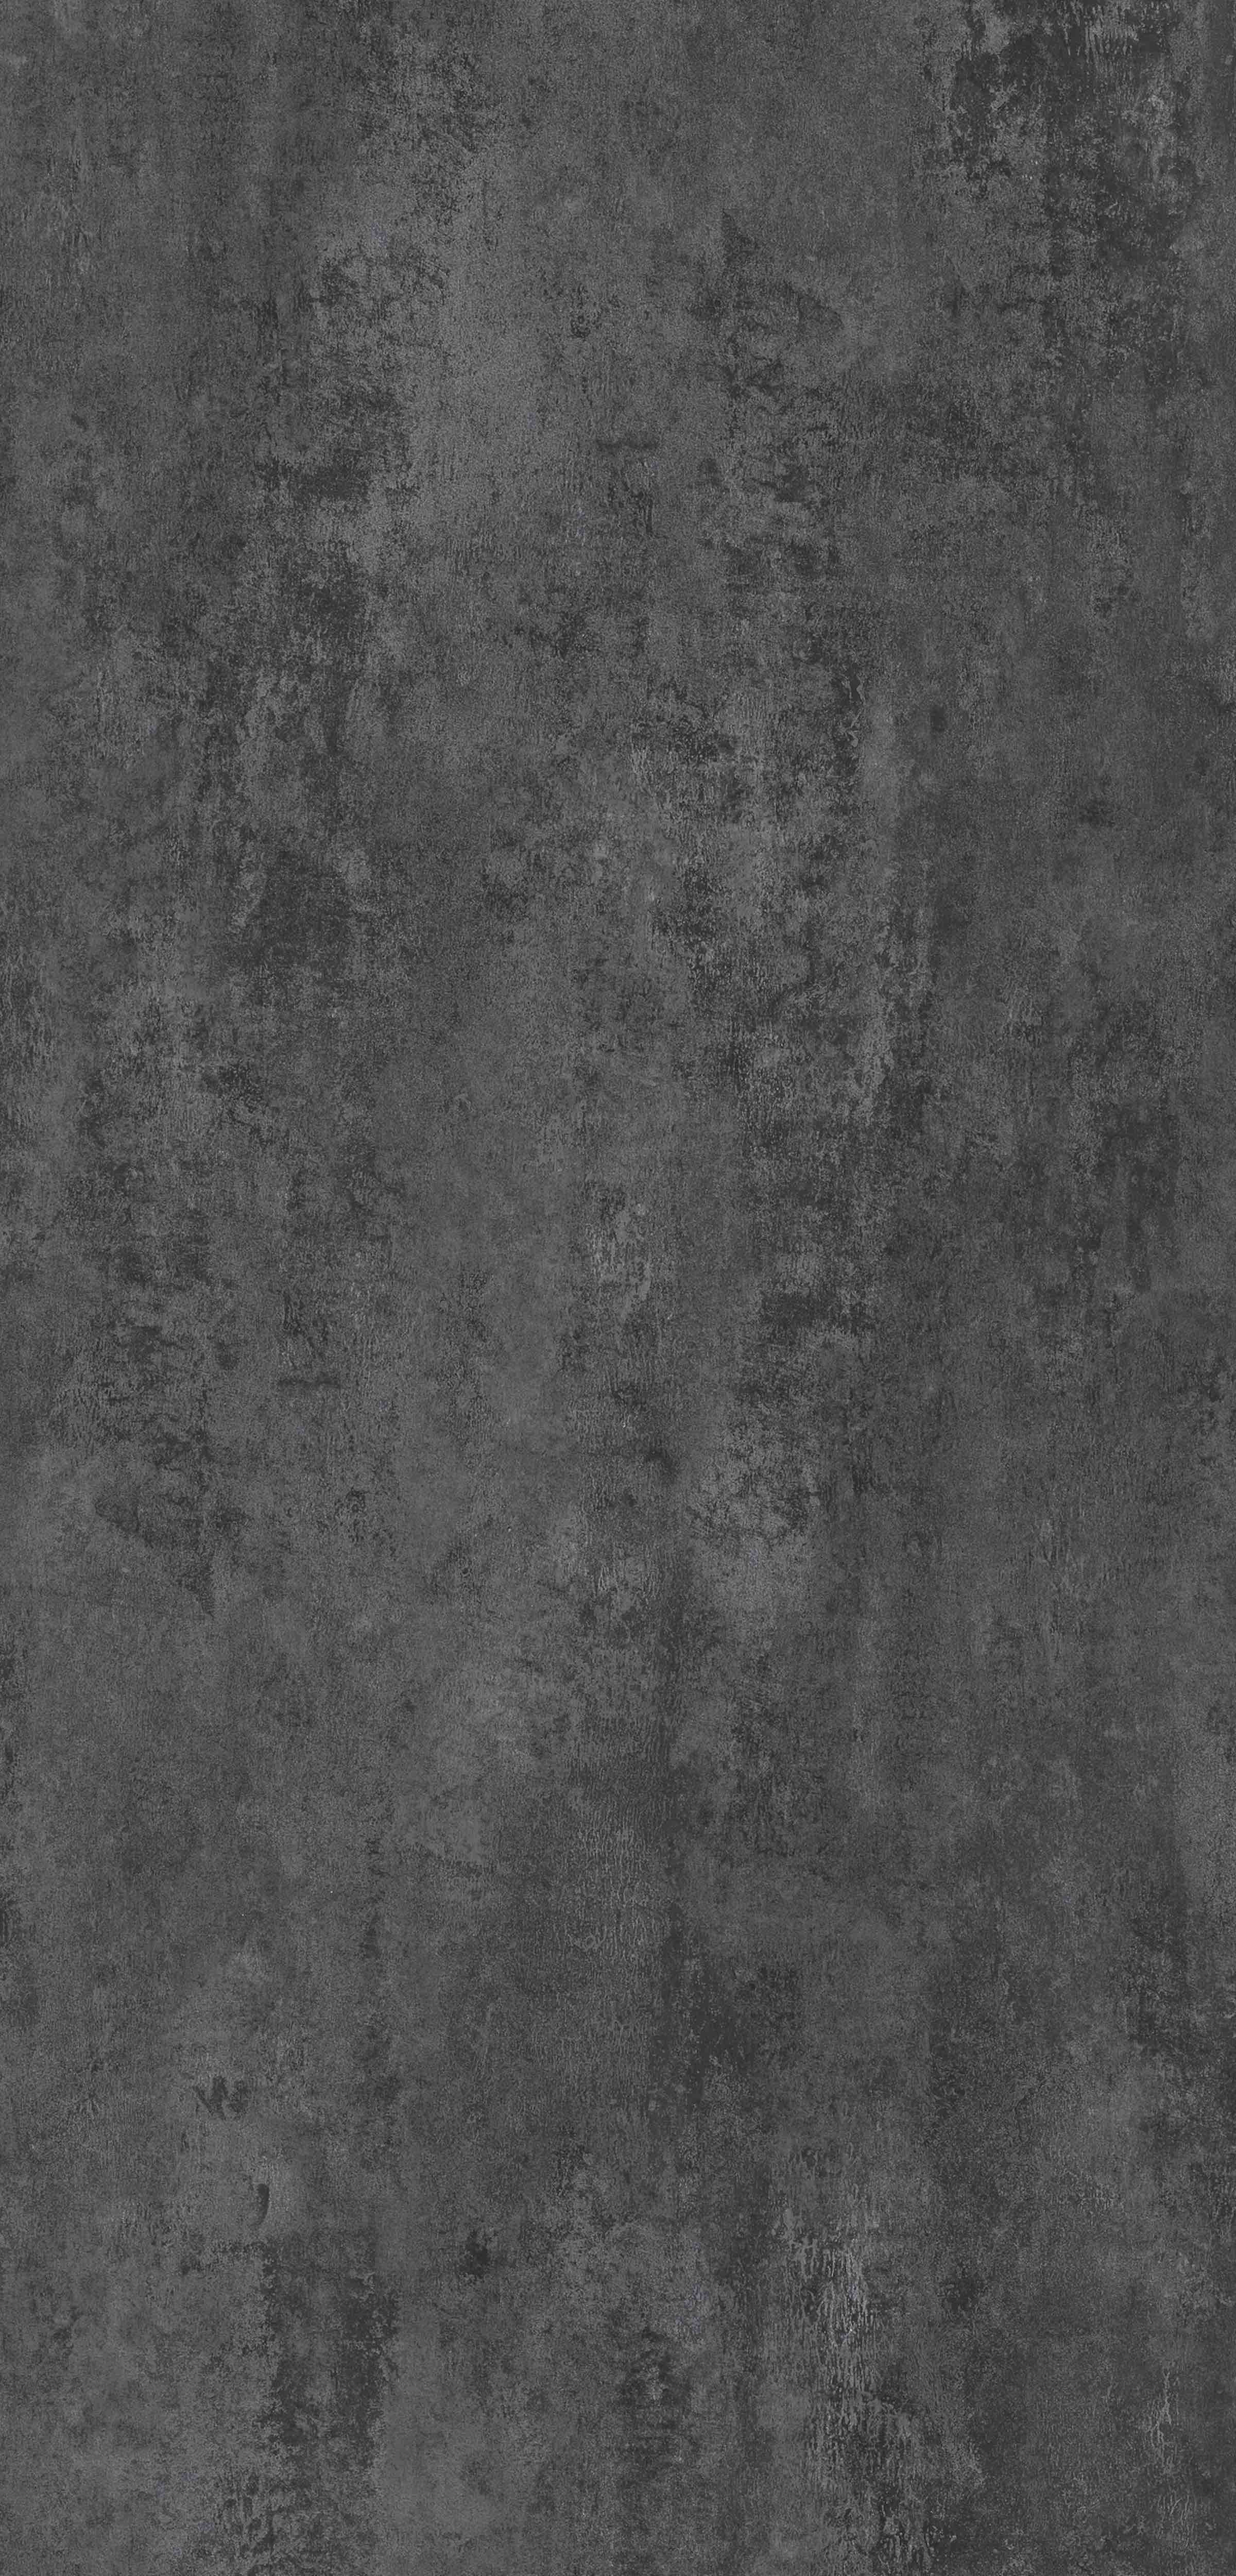 Rappórt | Dark Metalstone, 2979 | Paragon Carpet Tiles | Commercial Carpet Tiles